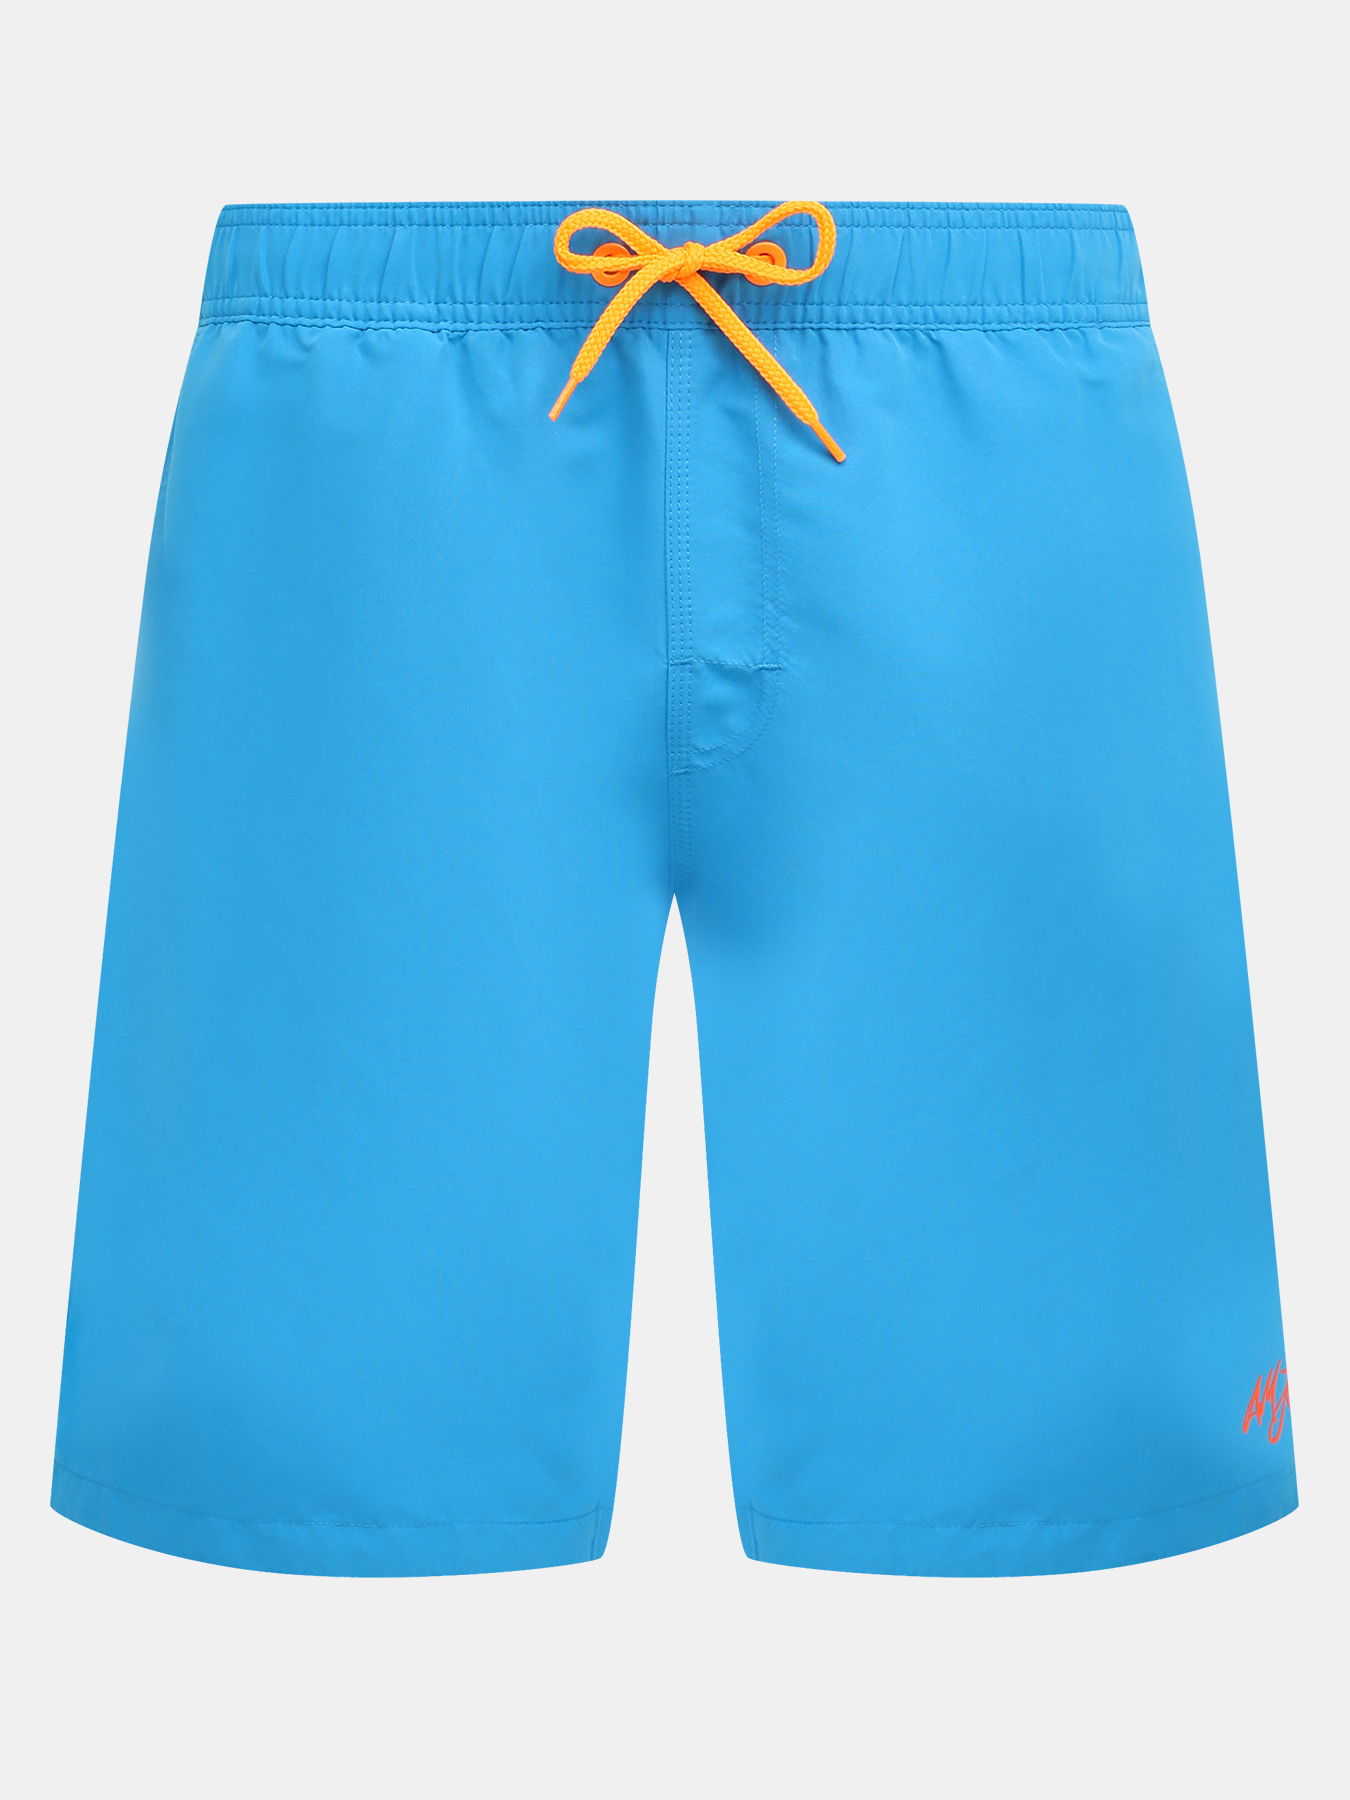 Шорты плавательные Alessandro Manzoni Jeans 376495-030, цвет голубой, размер 58